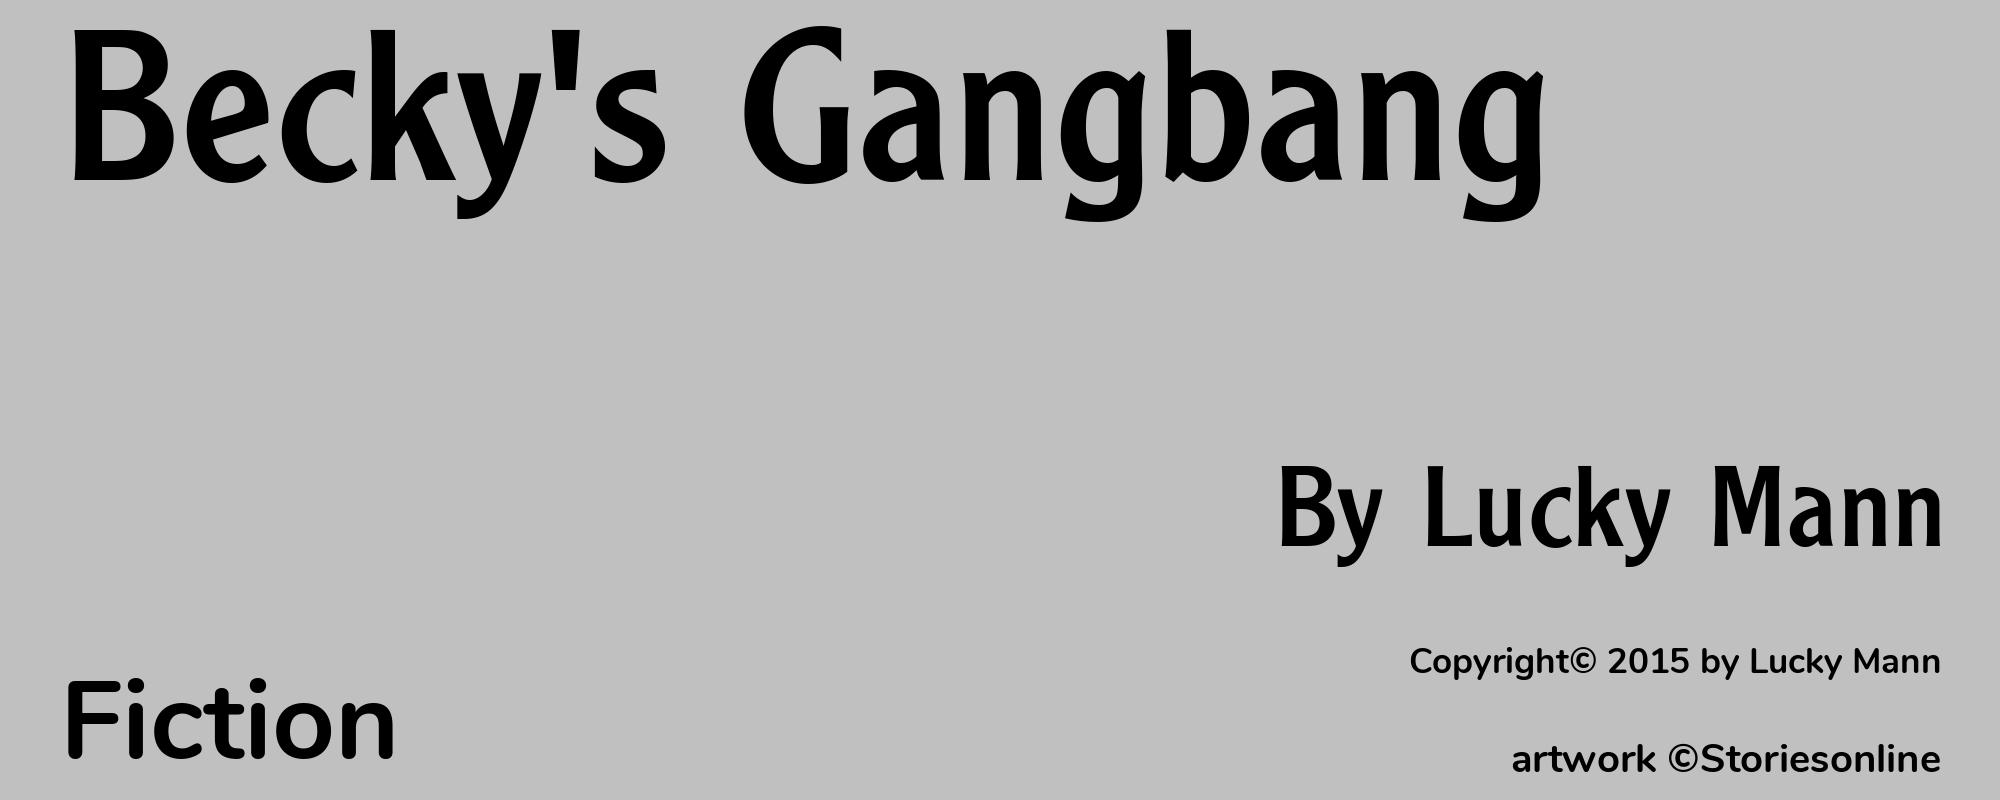 Becky's Gangbang - Cover